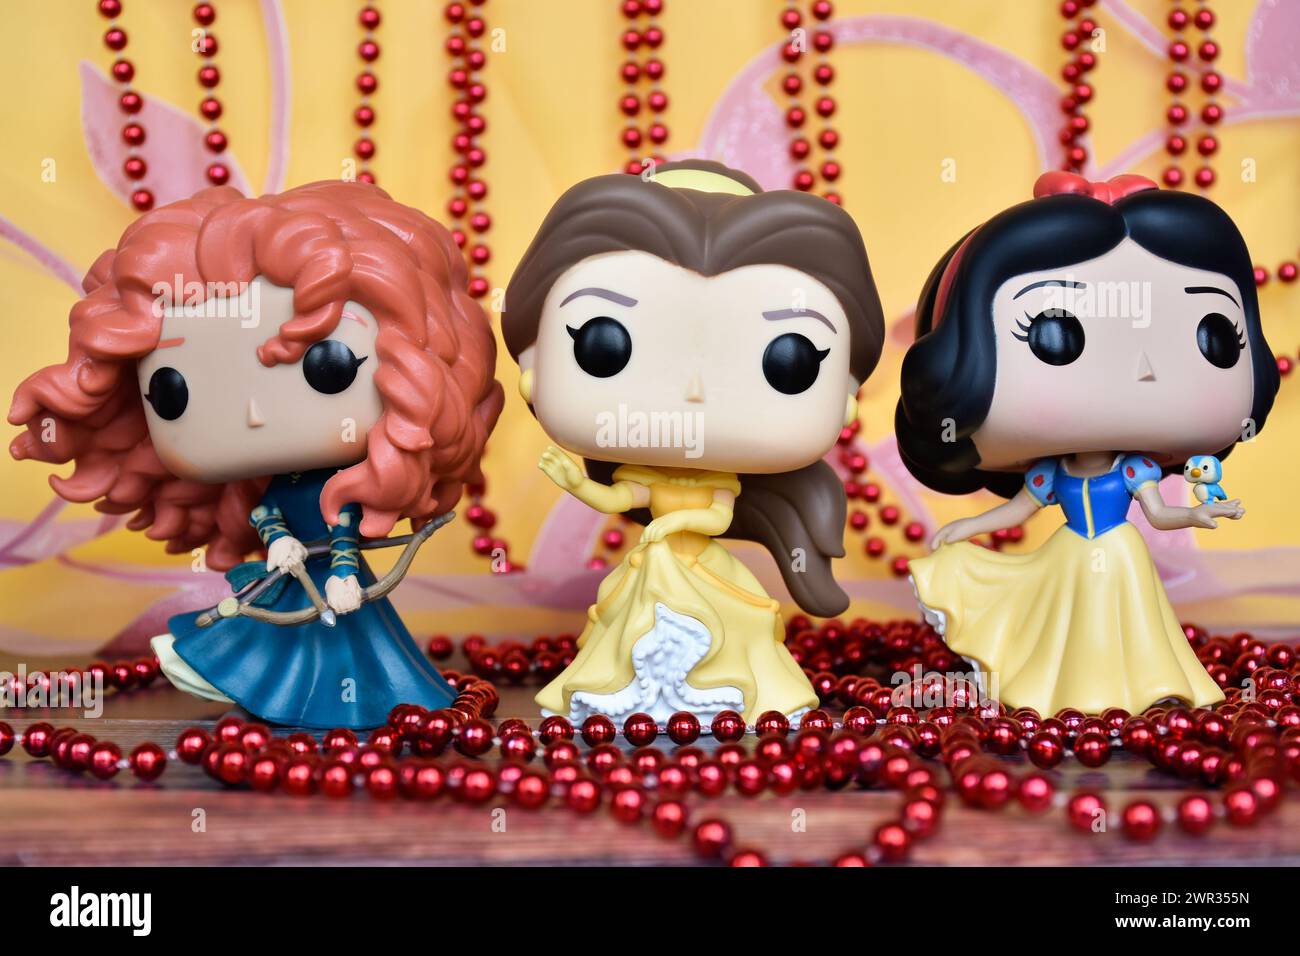 Funko Pop Actionfiguren der Disney-Prinzessinnen Merida (tapfer), Belle (Schönheit und das Biest) und Schneewittchen. Goldener rosa Vorhang, rote Halskette, fabelhaft. Stockfoto